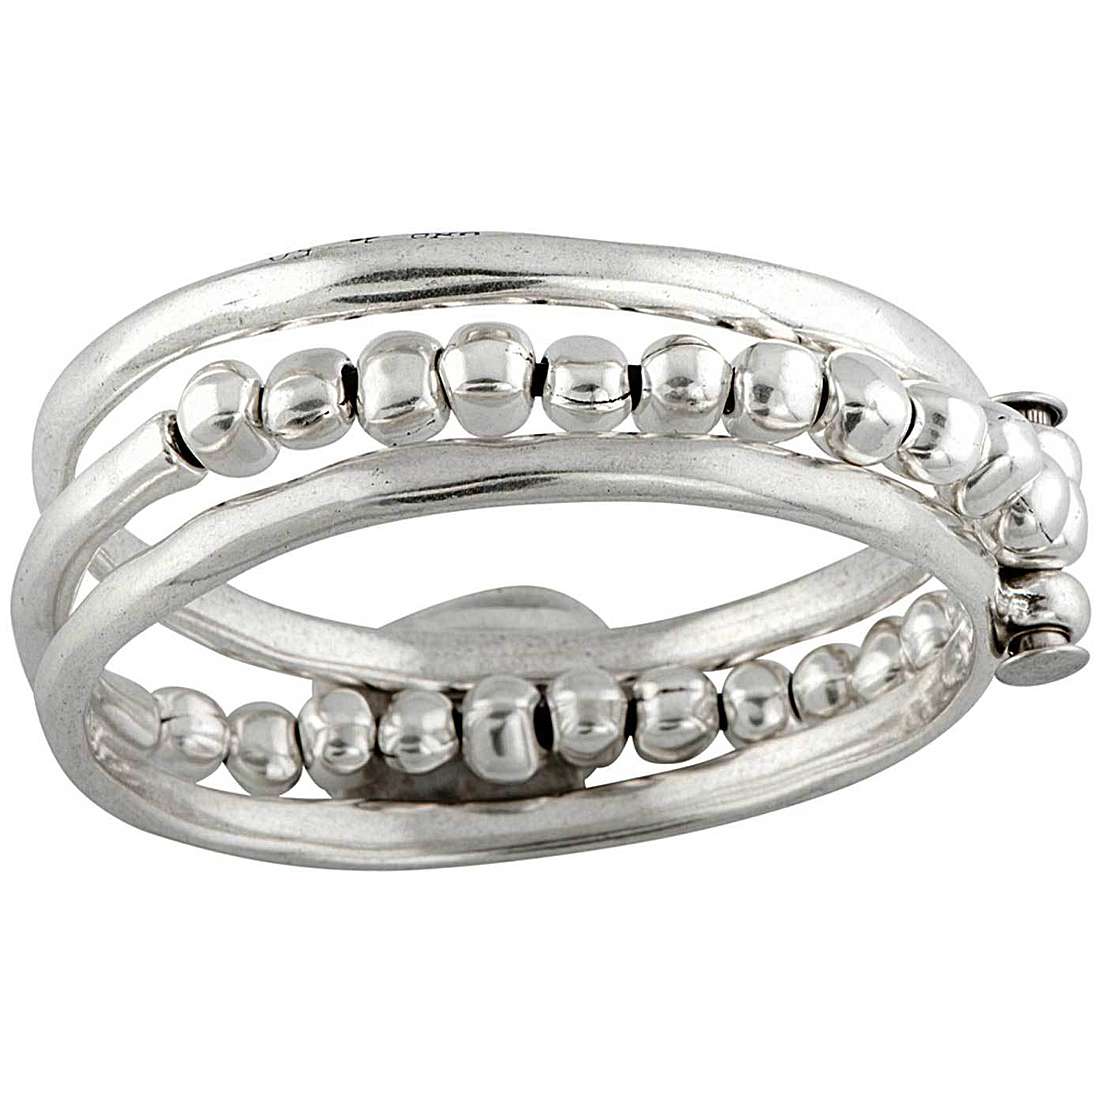 bracelet woman jewellery UnoDe50 PUL0858MTL0000M